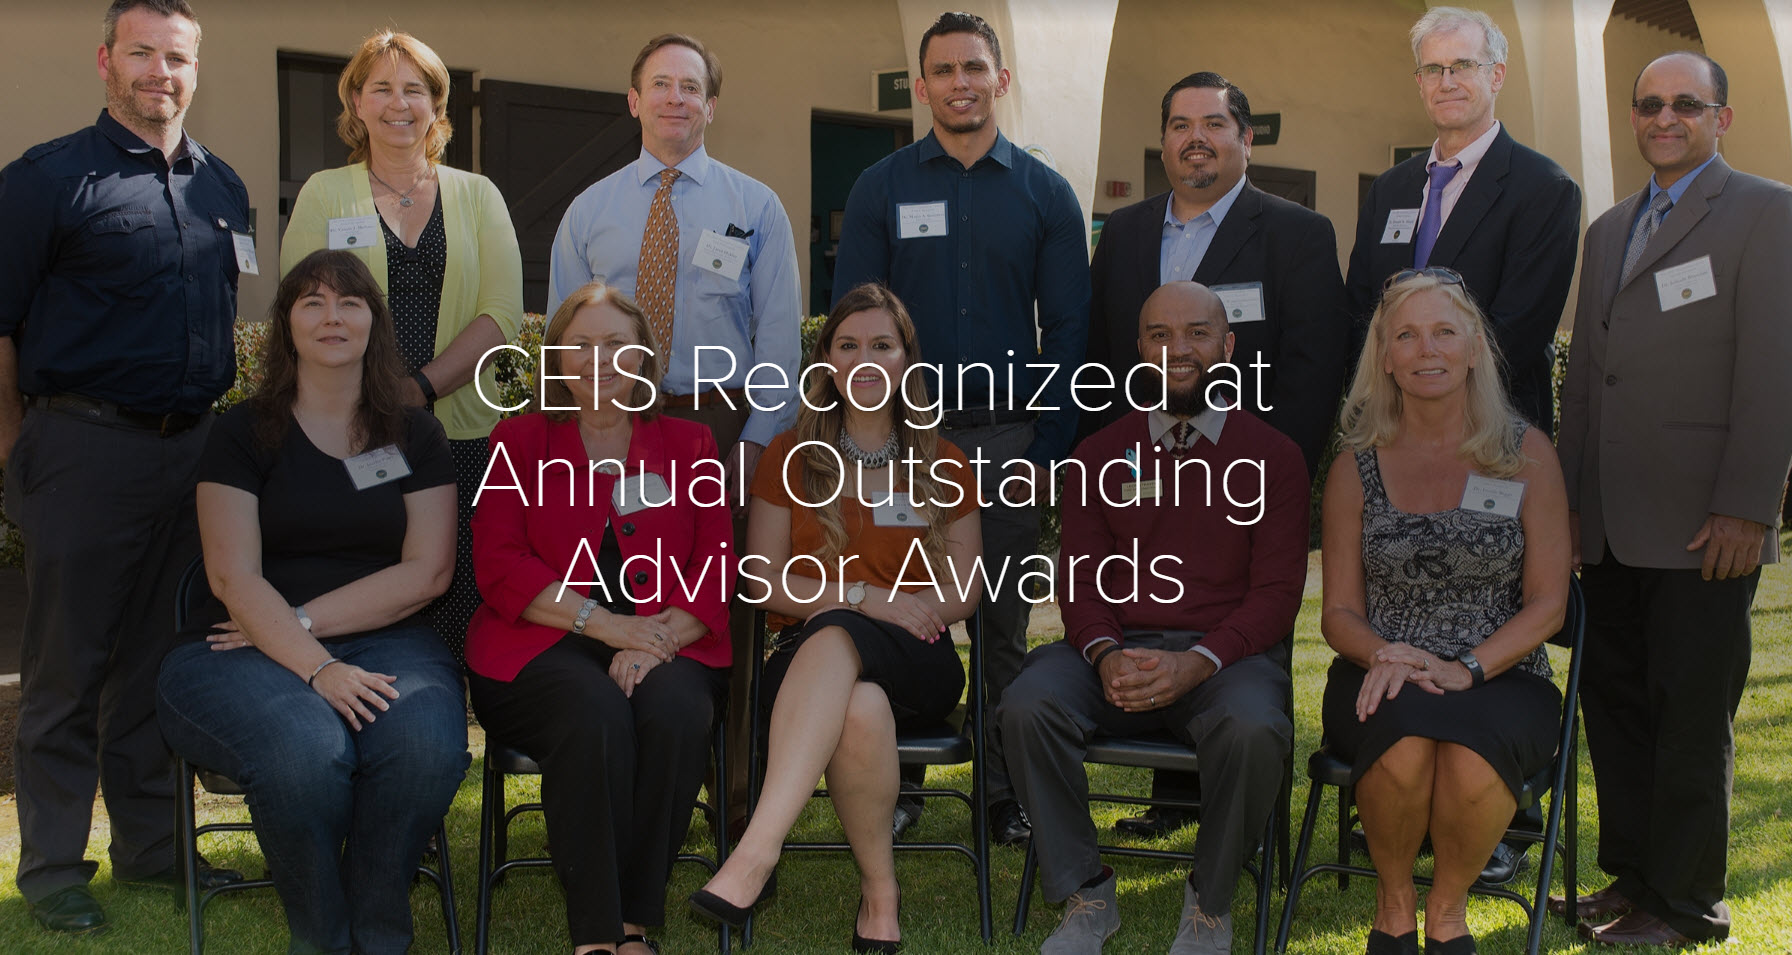 outstanding advisor awards 2016 group